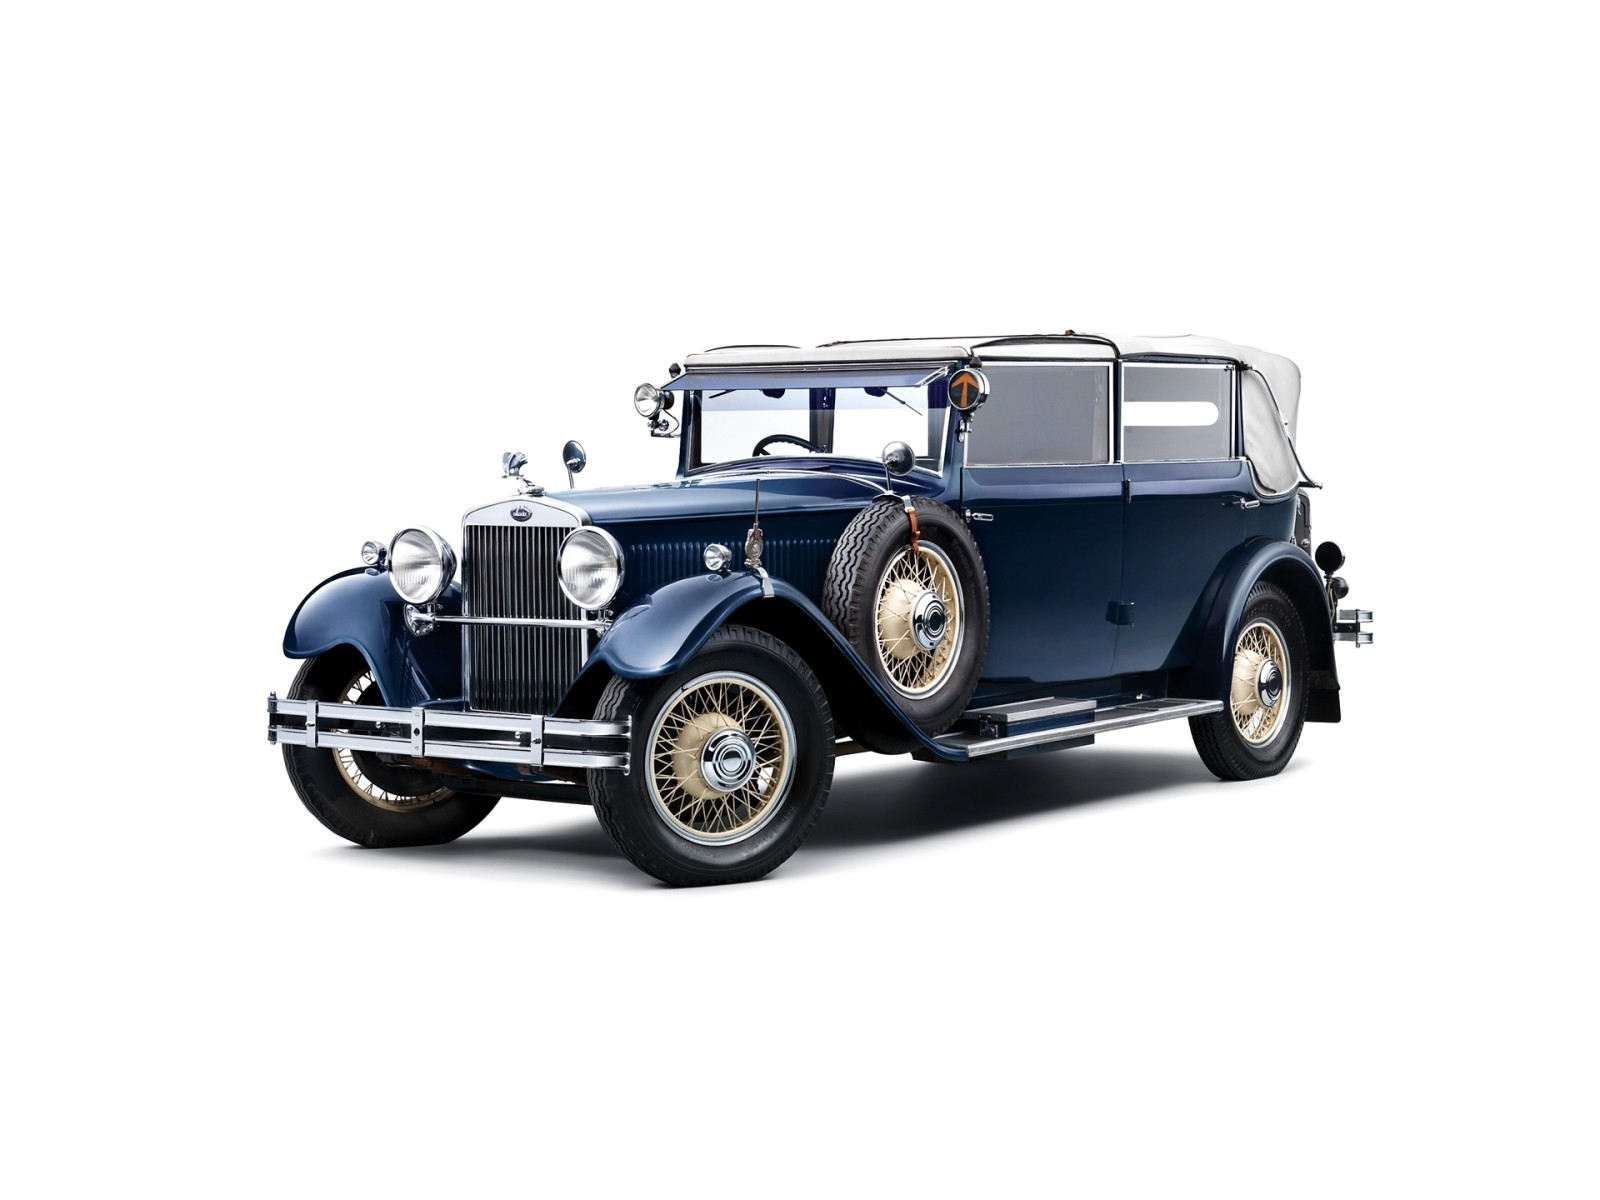 Cabriolet, mobil atap terbuka, Skoda, 1933, 860